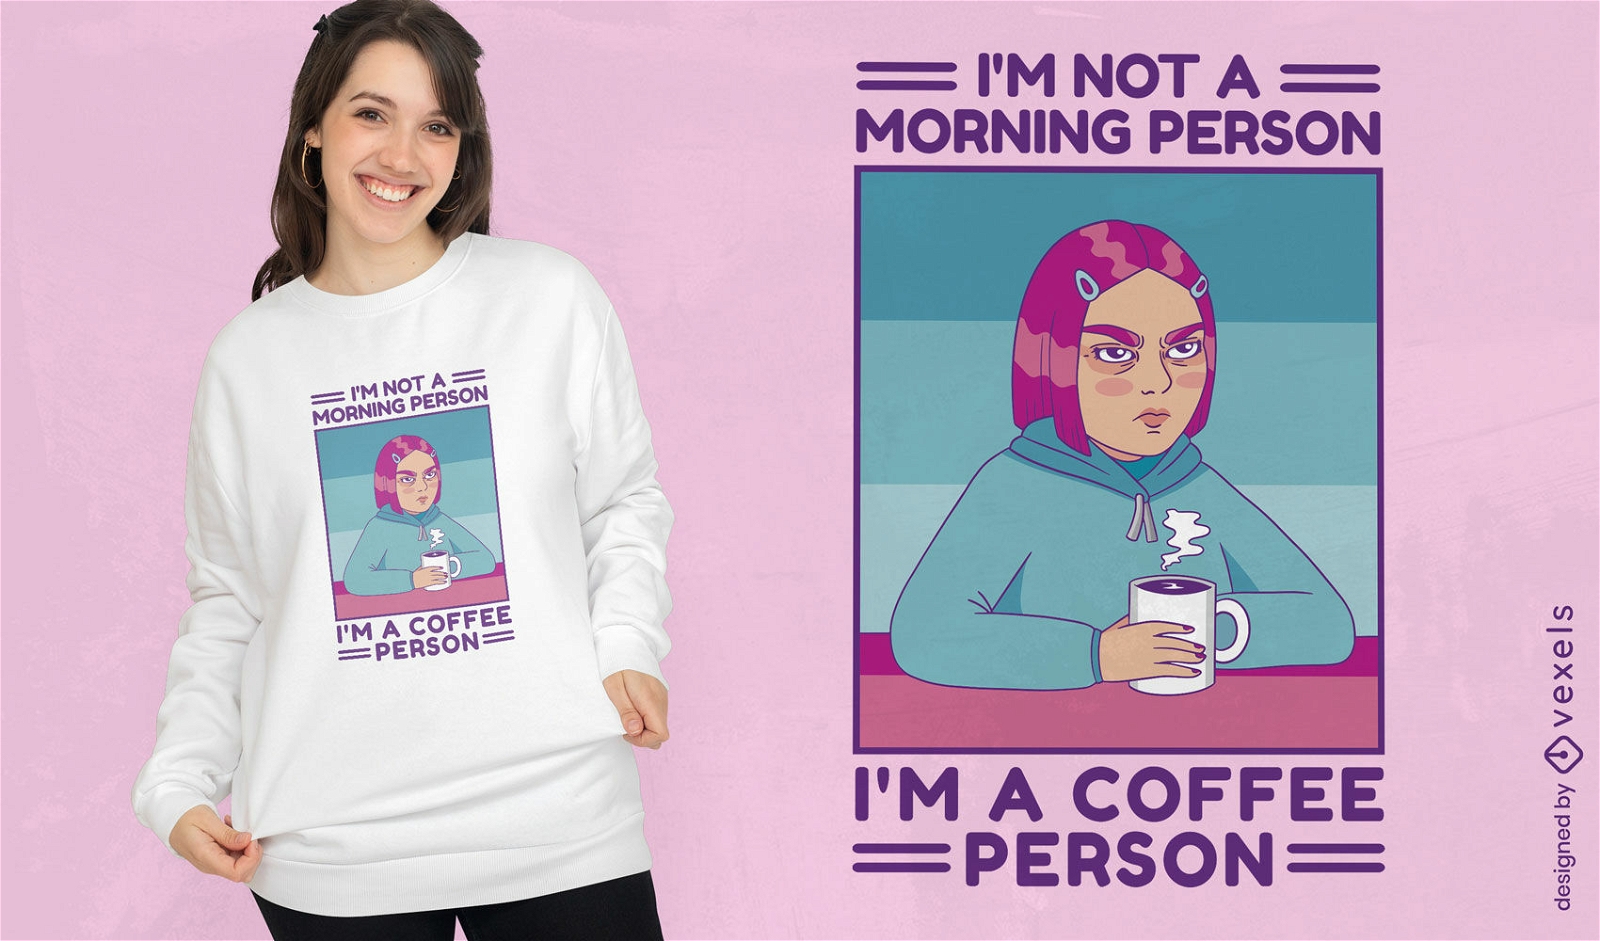 Dise?o de camiseta de caf? y mujer enojada.